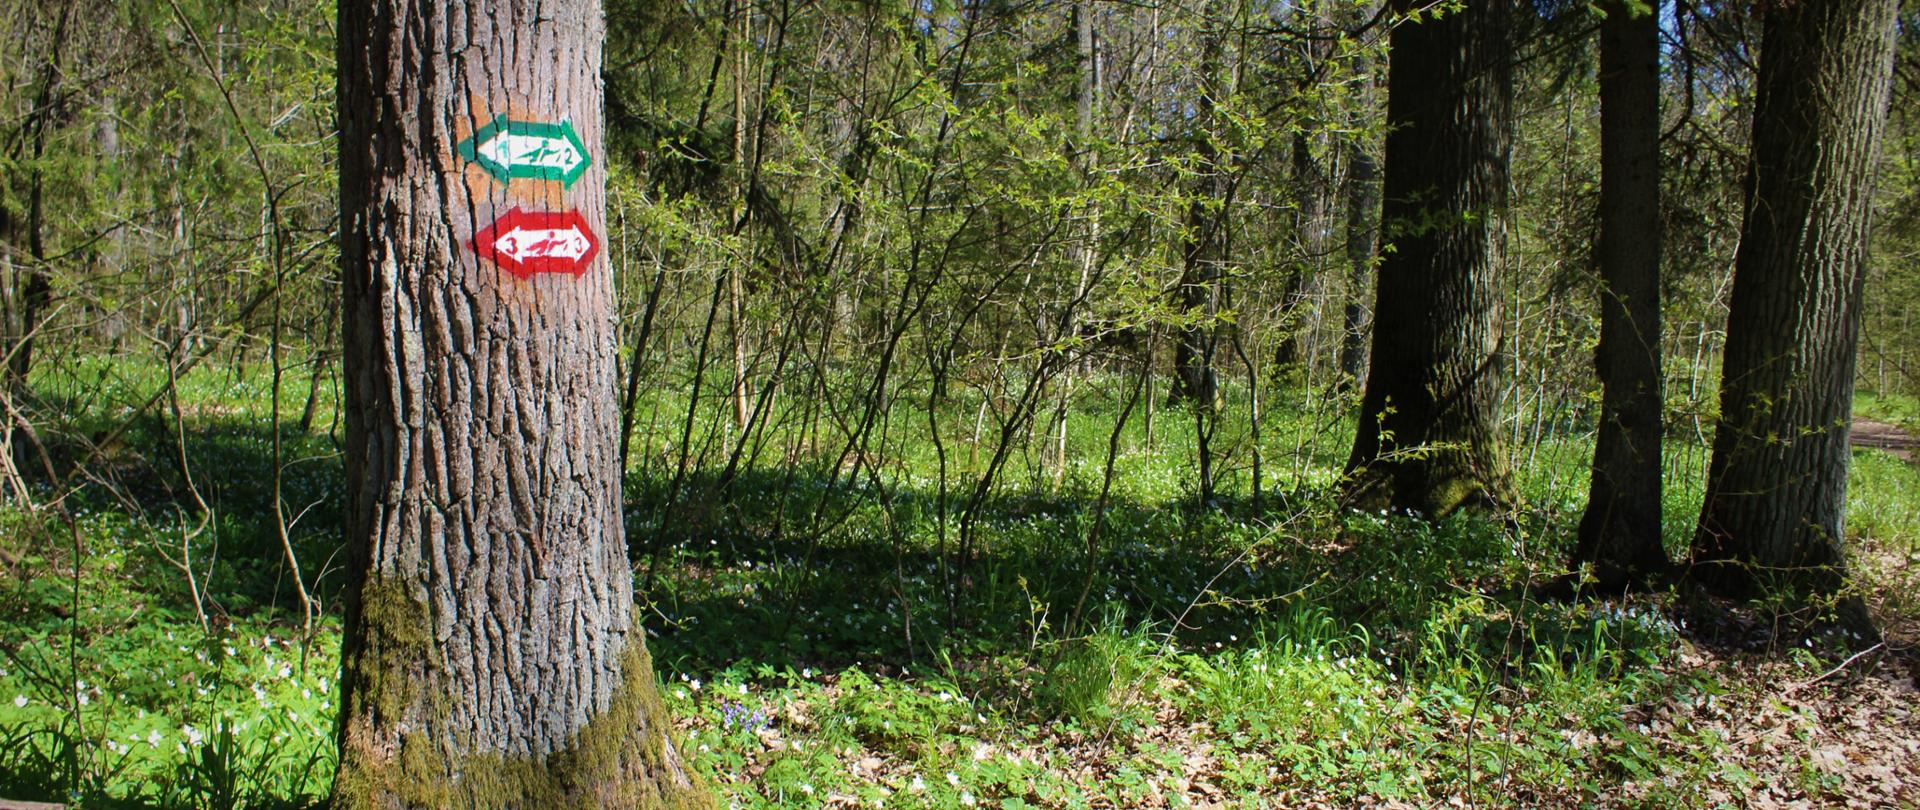 Znaki nordic walking namalowane na drzewie